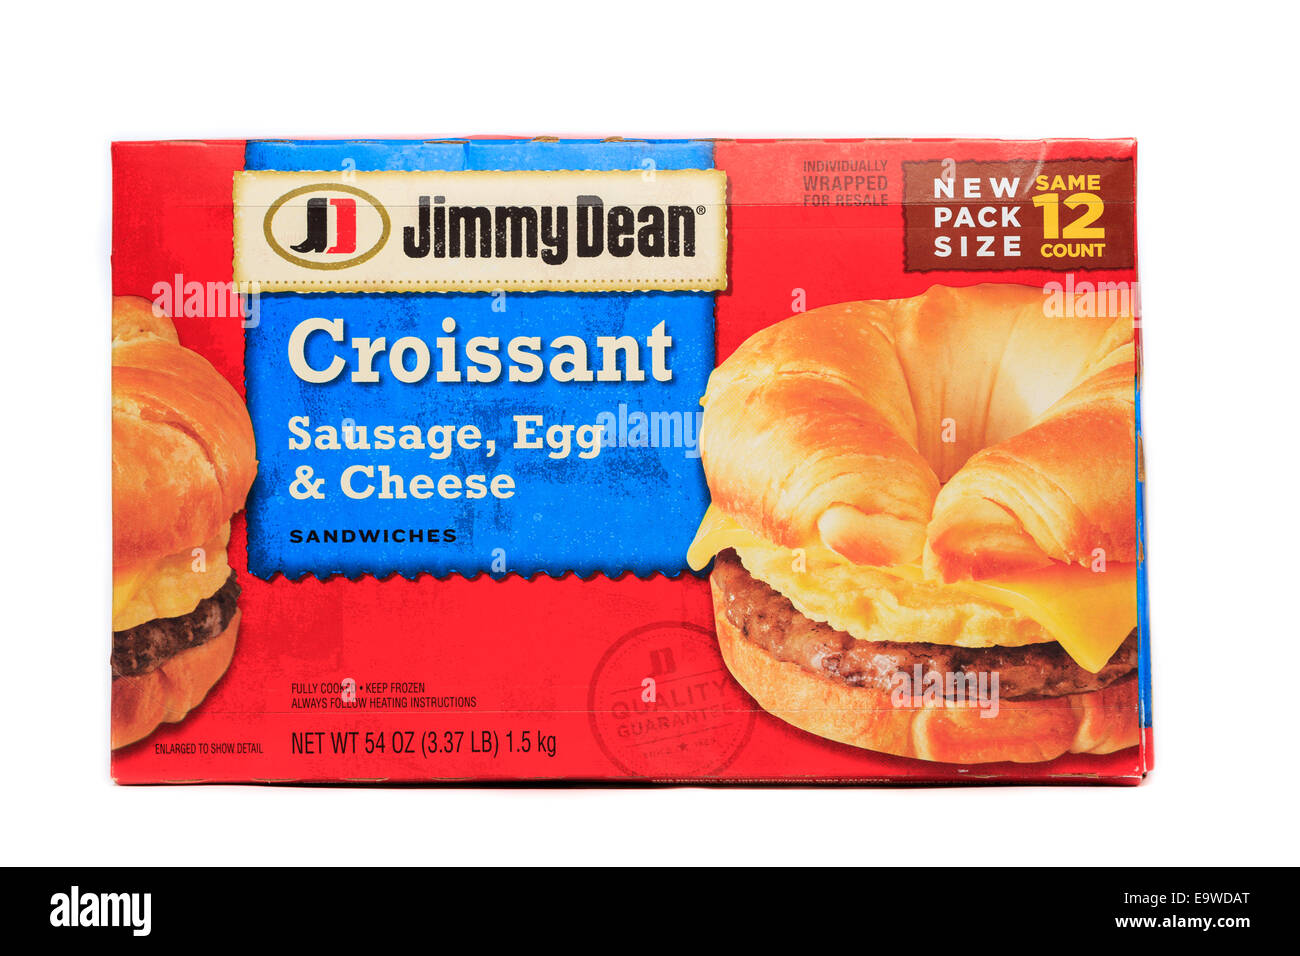 Costco Masse Kasten des Jimmy Dean Croissant Wurst, Ei & Käse-Sandwiches Stockfoto